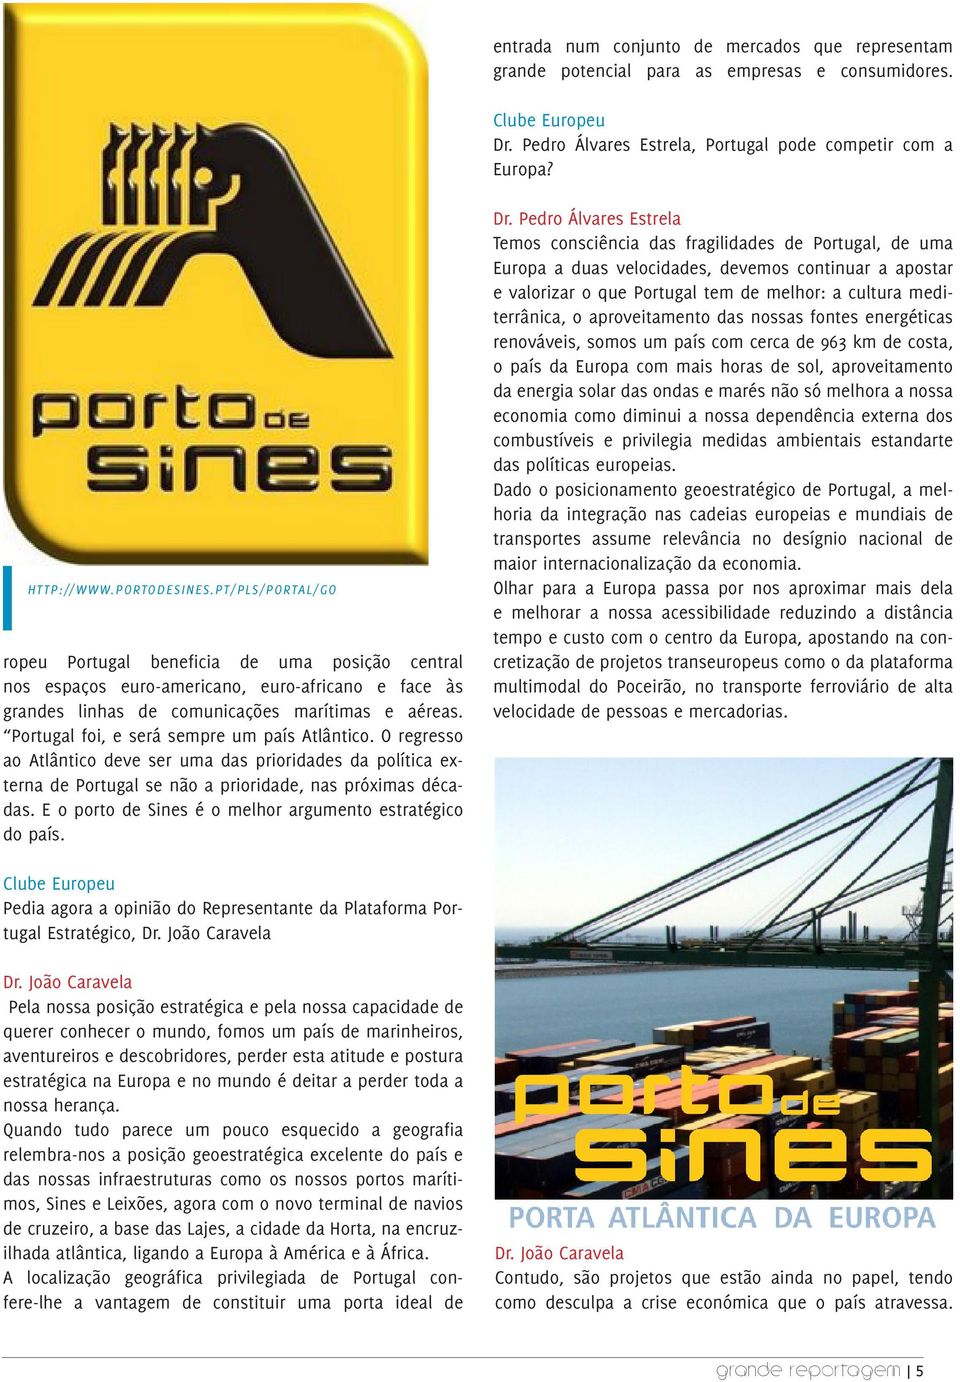 PT/PLS/PORTAL/GO SHARED BY KEVIN ON MAR 21, 2011 IN TECHNOLOGY ropeu Portugal beneficia de uma posição central nos espaços euro-americano, euro-africano e face às grandes linhas de comunicações